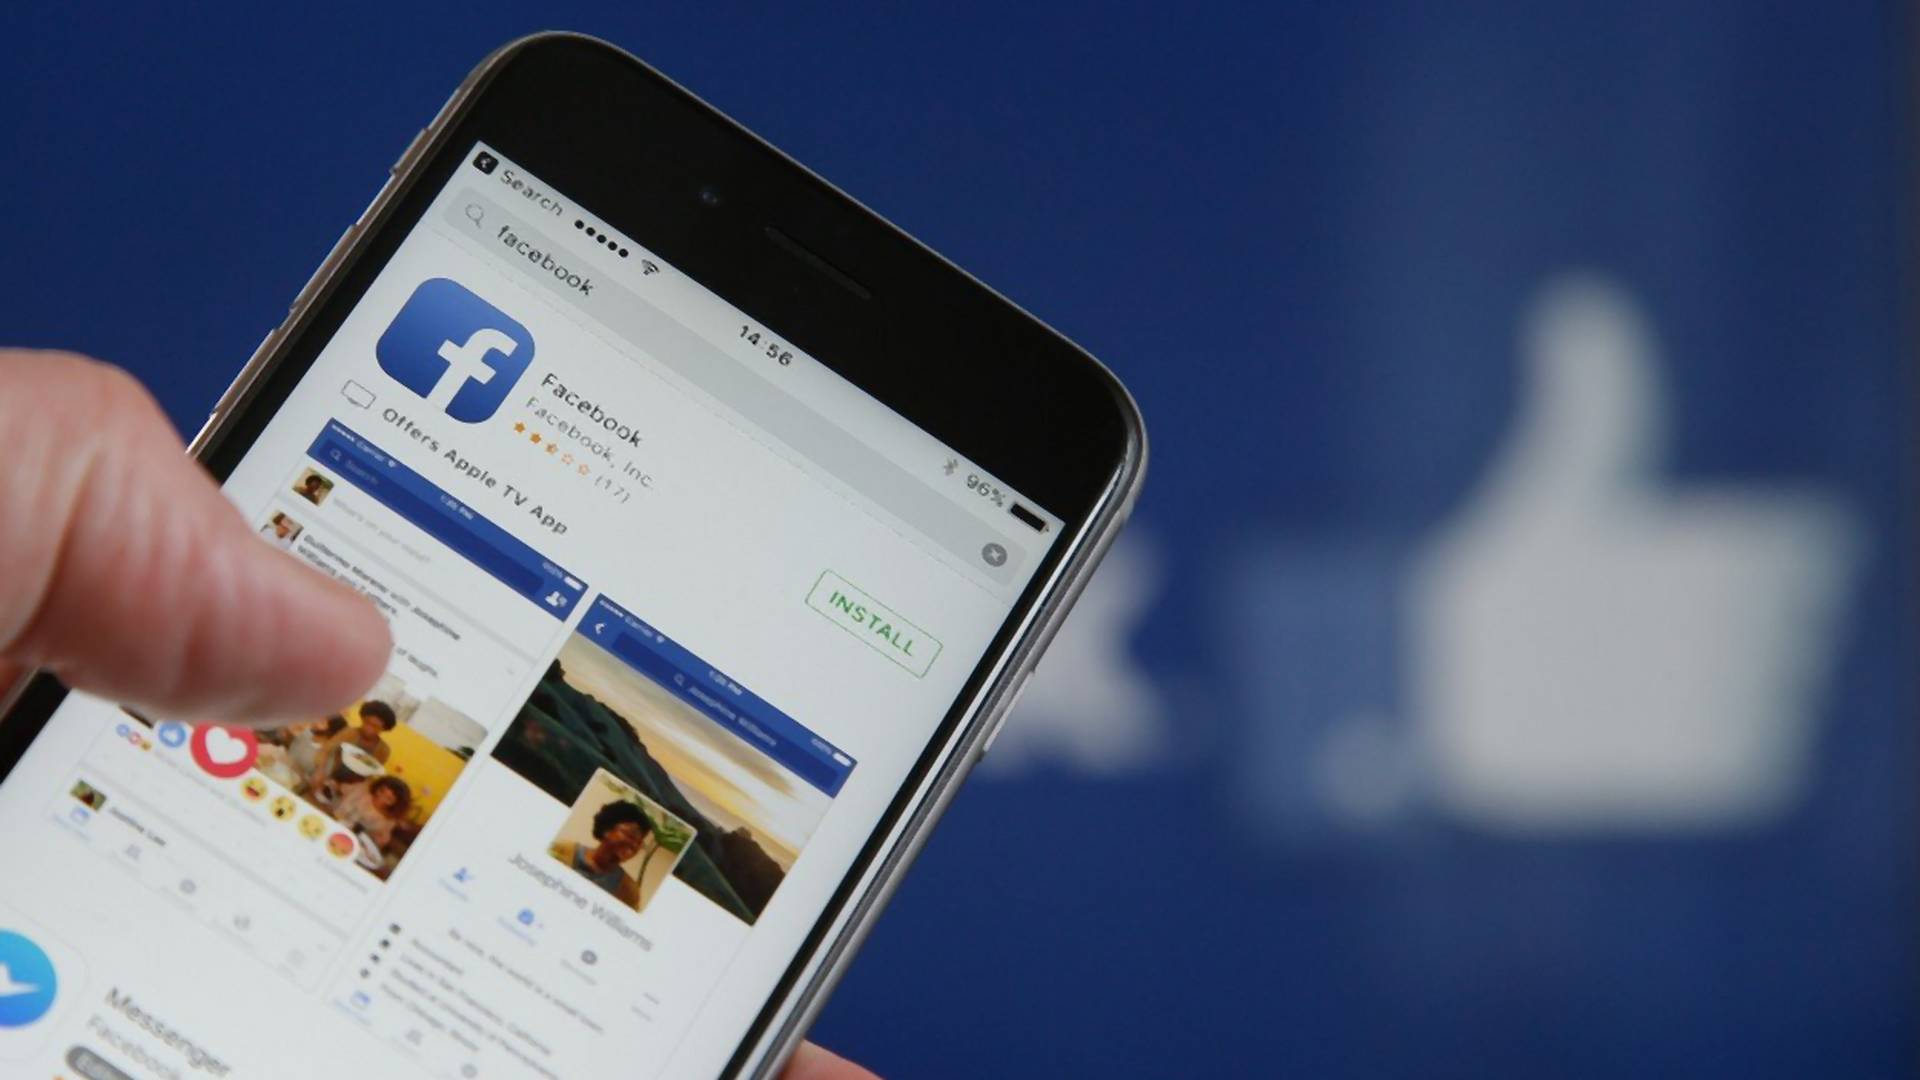 Doviđenja smarači! Facebook ima novu opciju da uklonite dosade od prijatelja